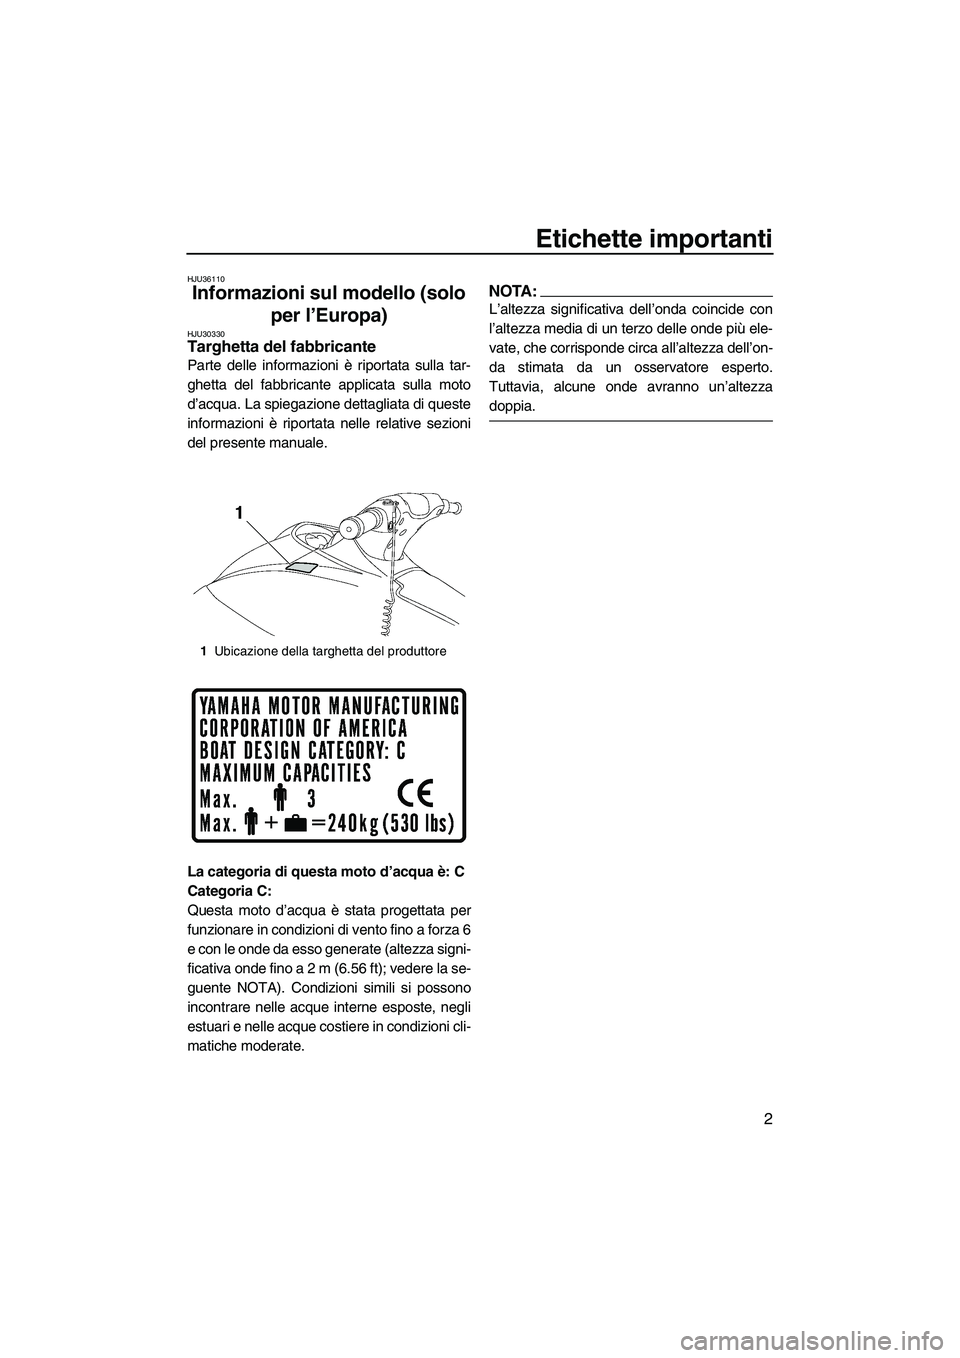 YAMAHA VX 2007  Manuale duso (in Italian) Etichette importanti
2
HJU36110
Informazioni sul modello (solo 
per l’Europa) 
HJU30330Targhetta del fabbricante 
Parte delle informazioni è riportata sulla tar-
ghetta del fabbricante applicata su